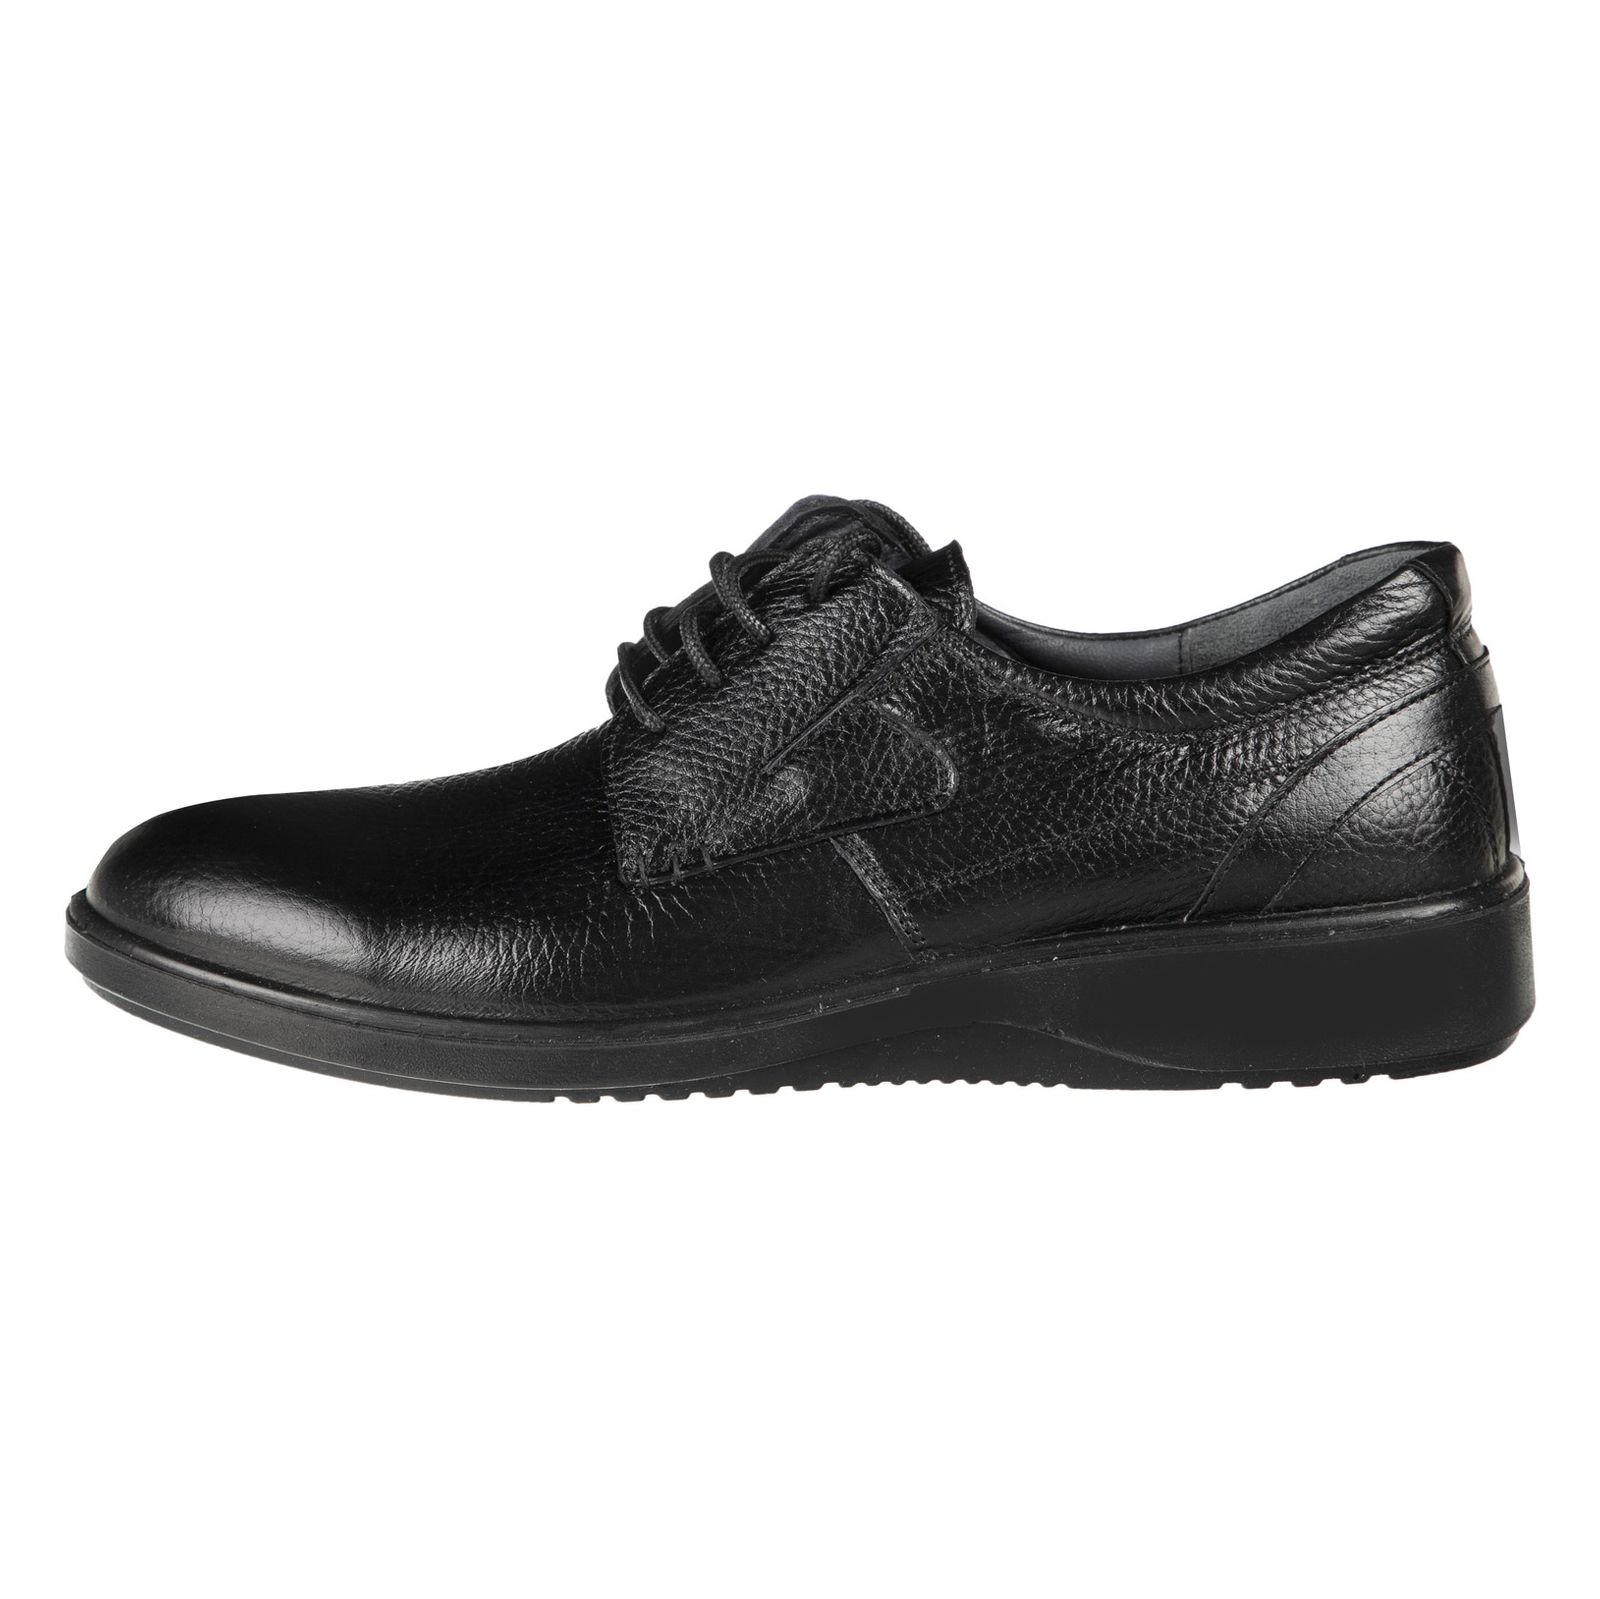 کفش مردانه بلوط مدل 7216B503-101 - مشکی - 2